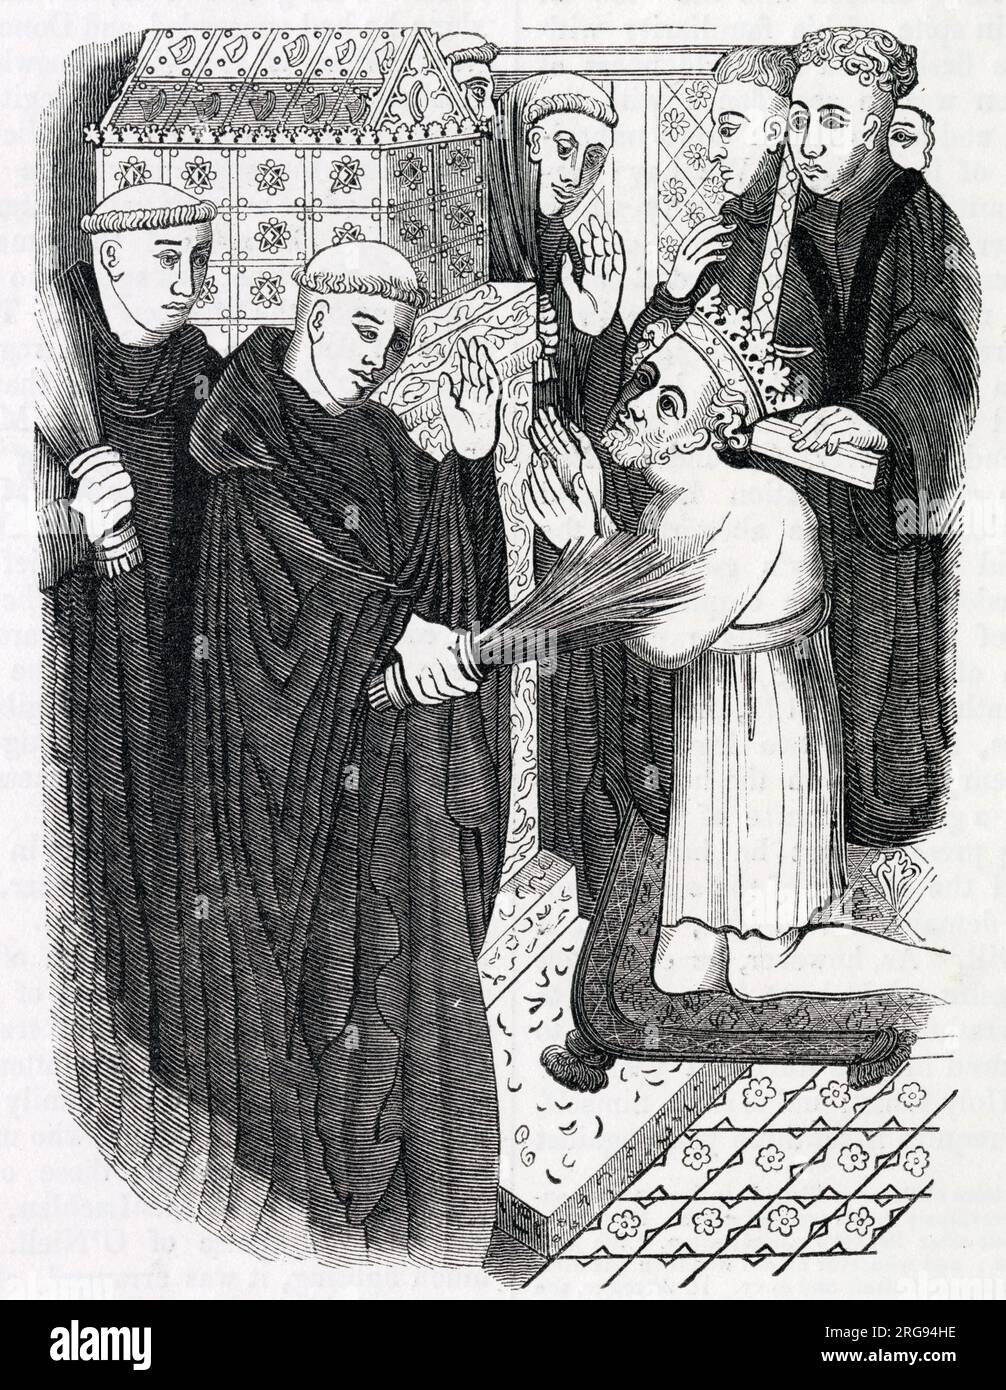 Dopo aver camminato a piedi nudi fino alla cattedrale di Canterbury, re Enrico II cerca penitenza presso la tomba di Thomas a Becket per la sua parte nell'omicidio di Becket, permettendo ai monaci di frustarlo. Foto Stock